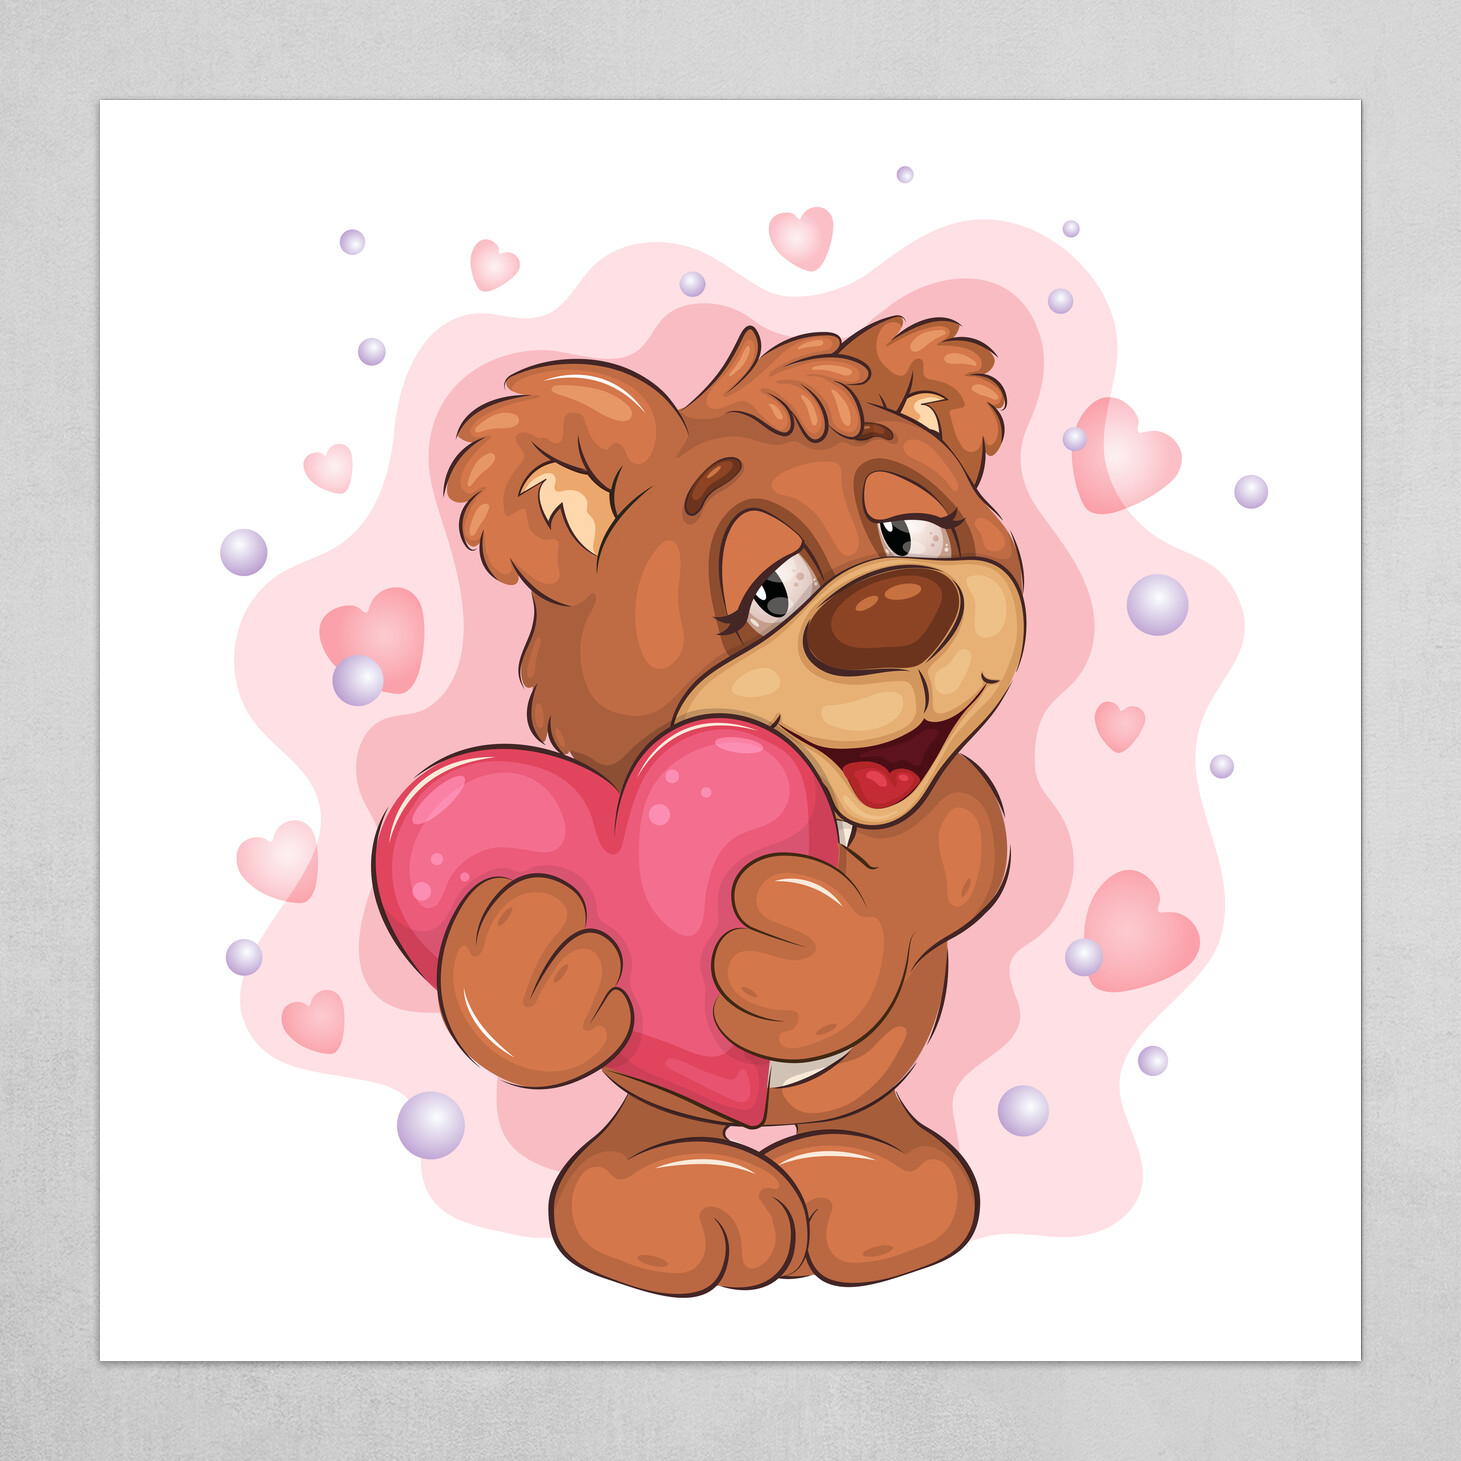 ArtStation - Cute Teddy Bear with Heart.